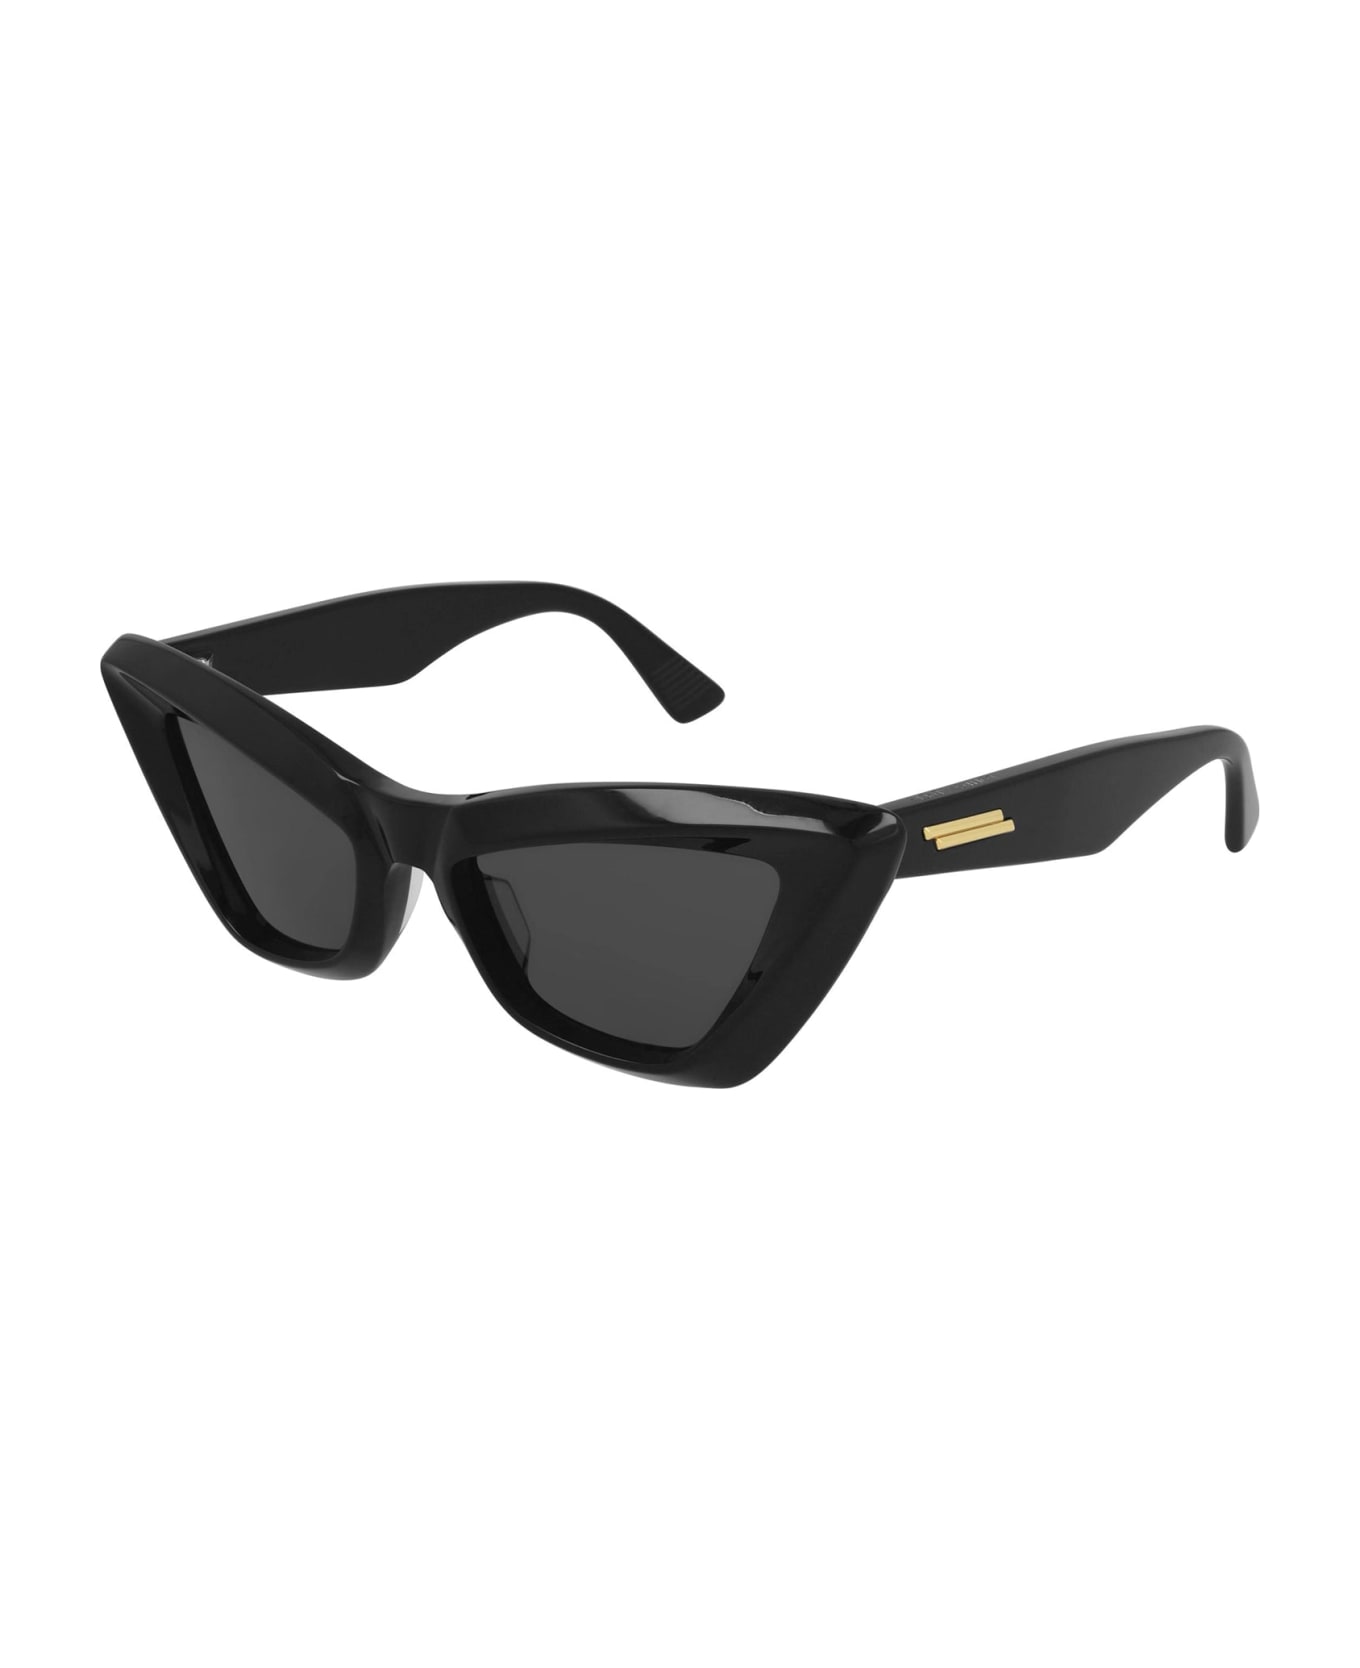 Bottega Veneta Eyewear Bv1101s-001 - Black Sunglasses - Black